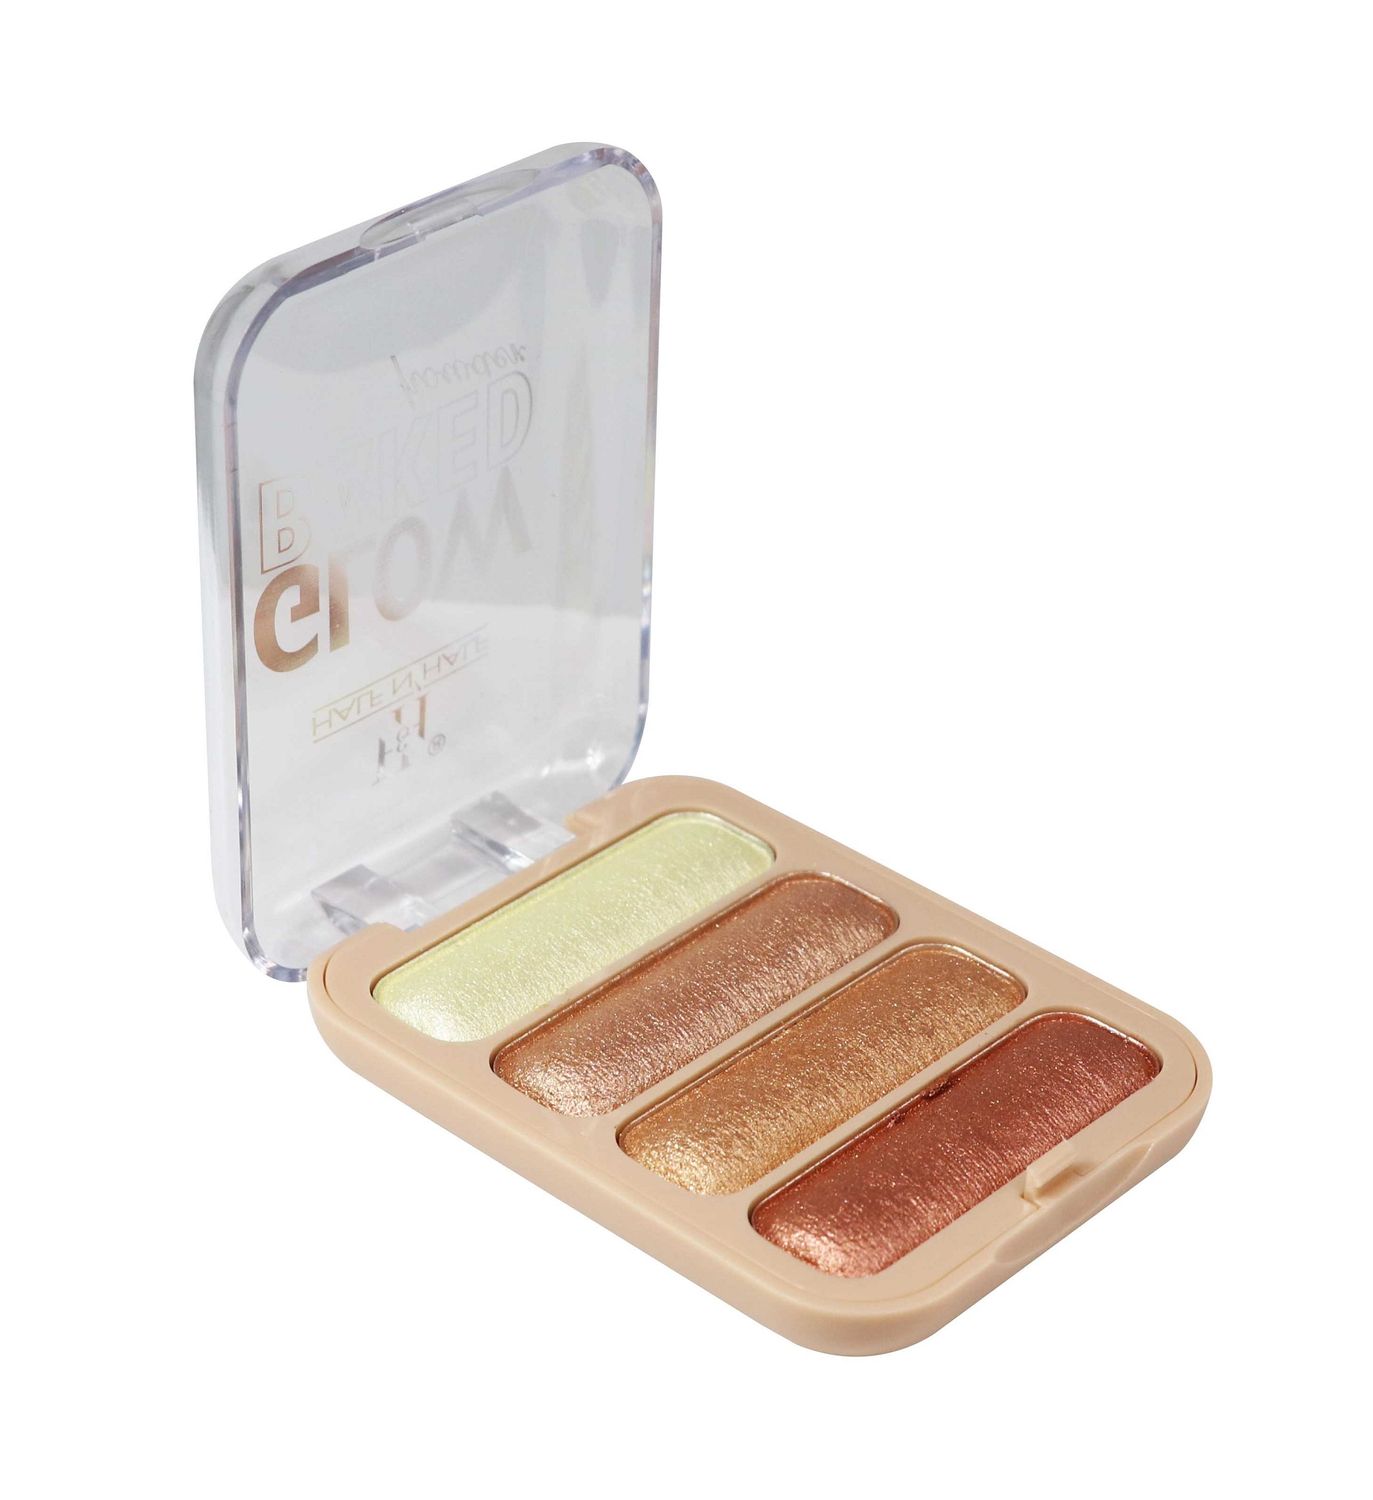 Buy Half N Half Glow Baked Powder Palette, Snow Flake 01 (8gm) - Purplle